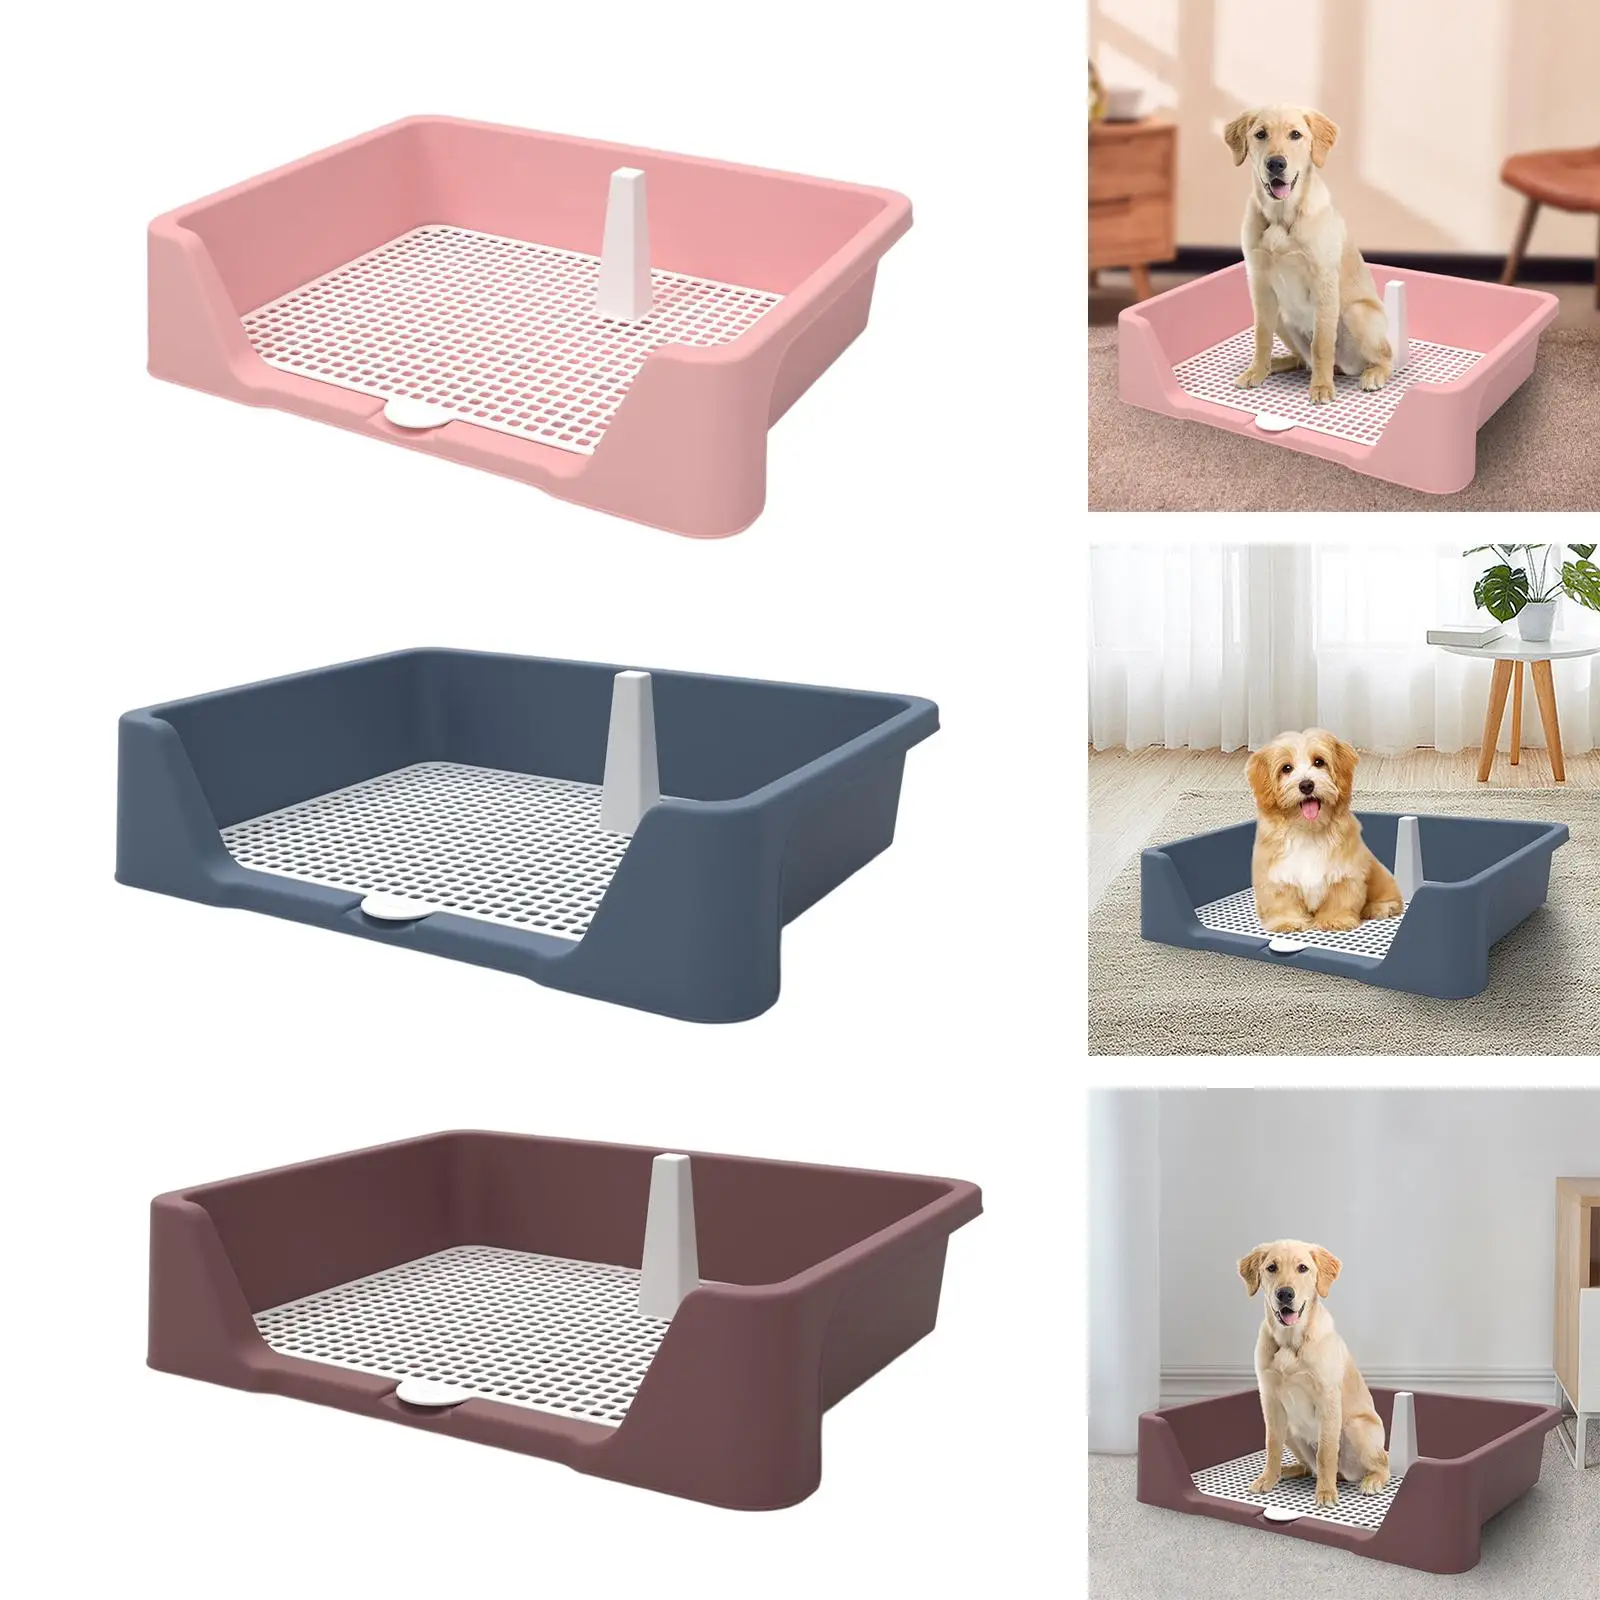 Dog Toilet Keep Paws and Floors Clean Pee Pad Holder Splashproof Bedpan